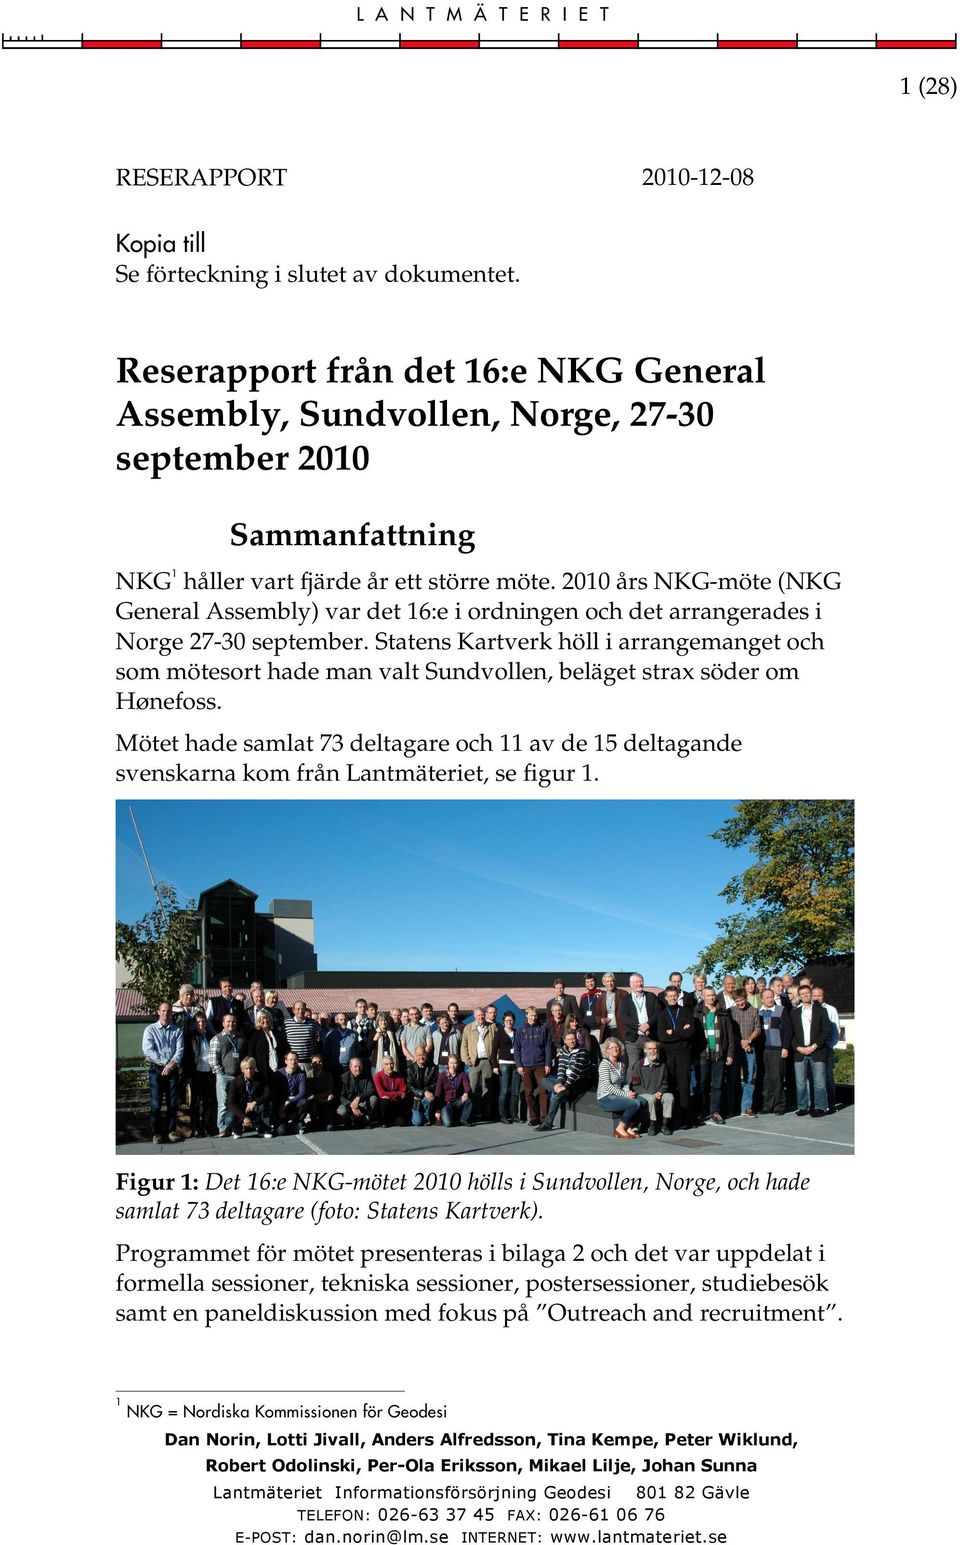 2010 års NKG-möte (NKG General Assembly) var det 16:e i ordningen och det arrangerades i Norge 27-30 september.